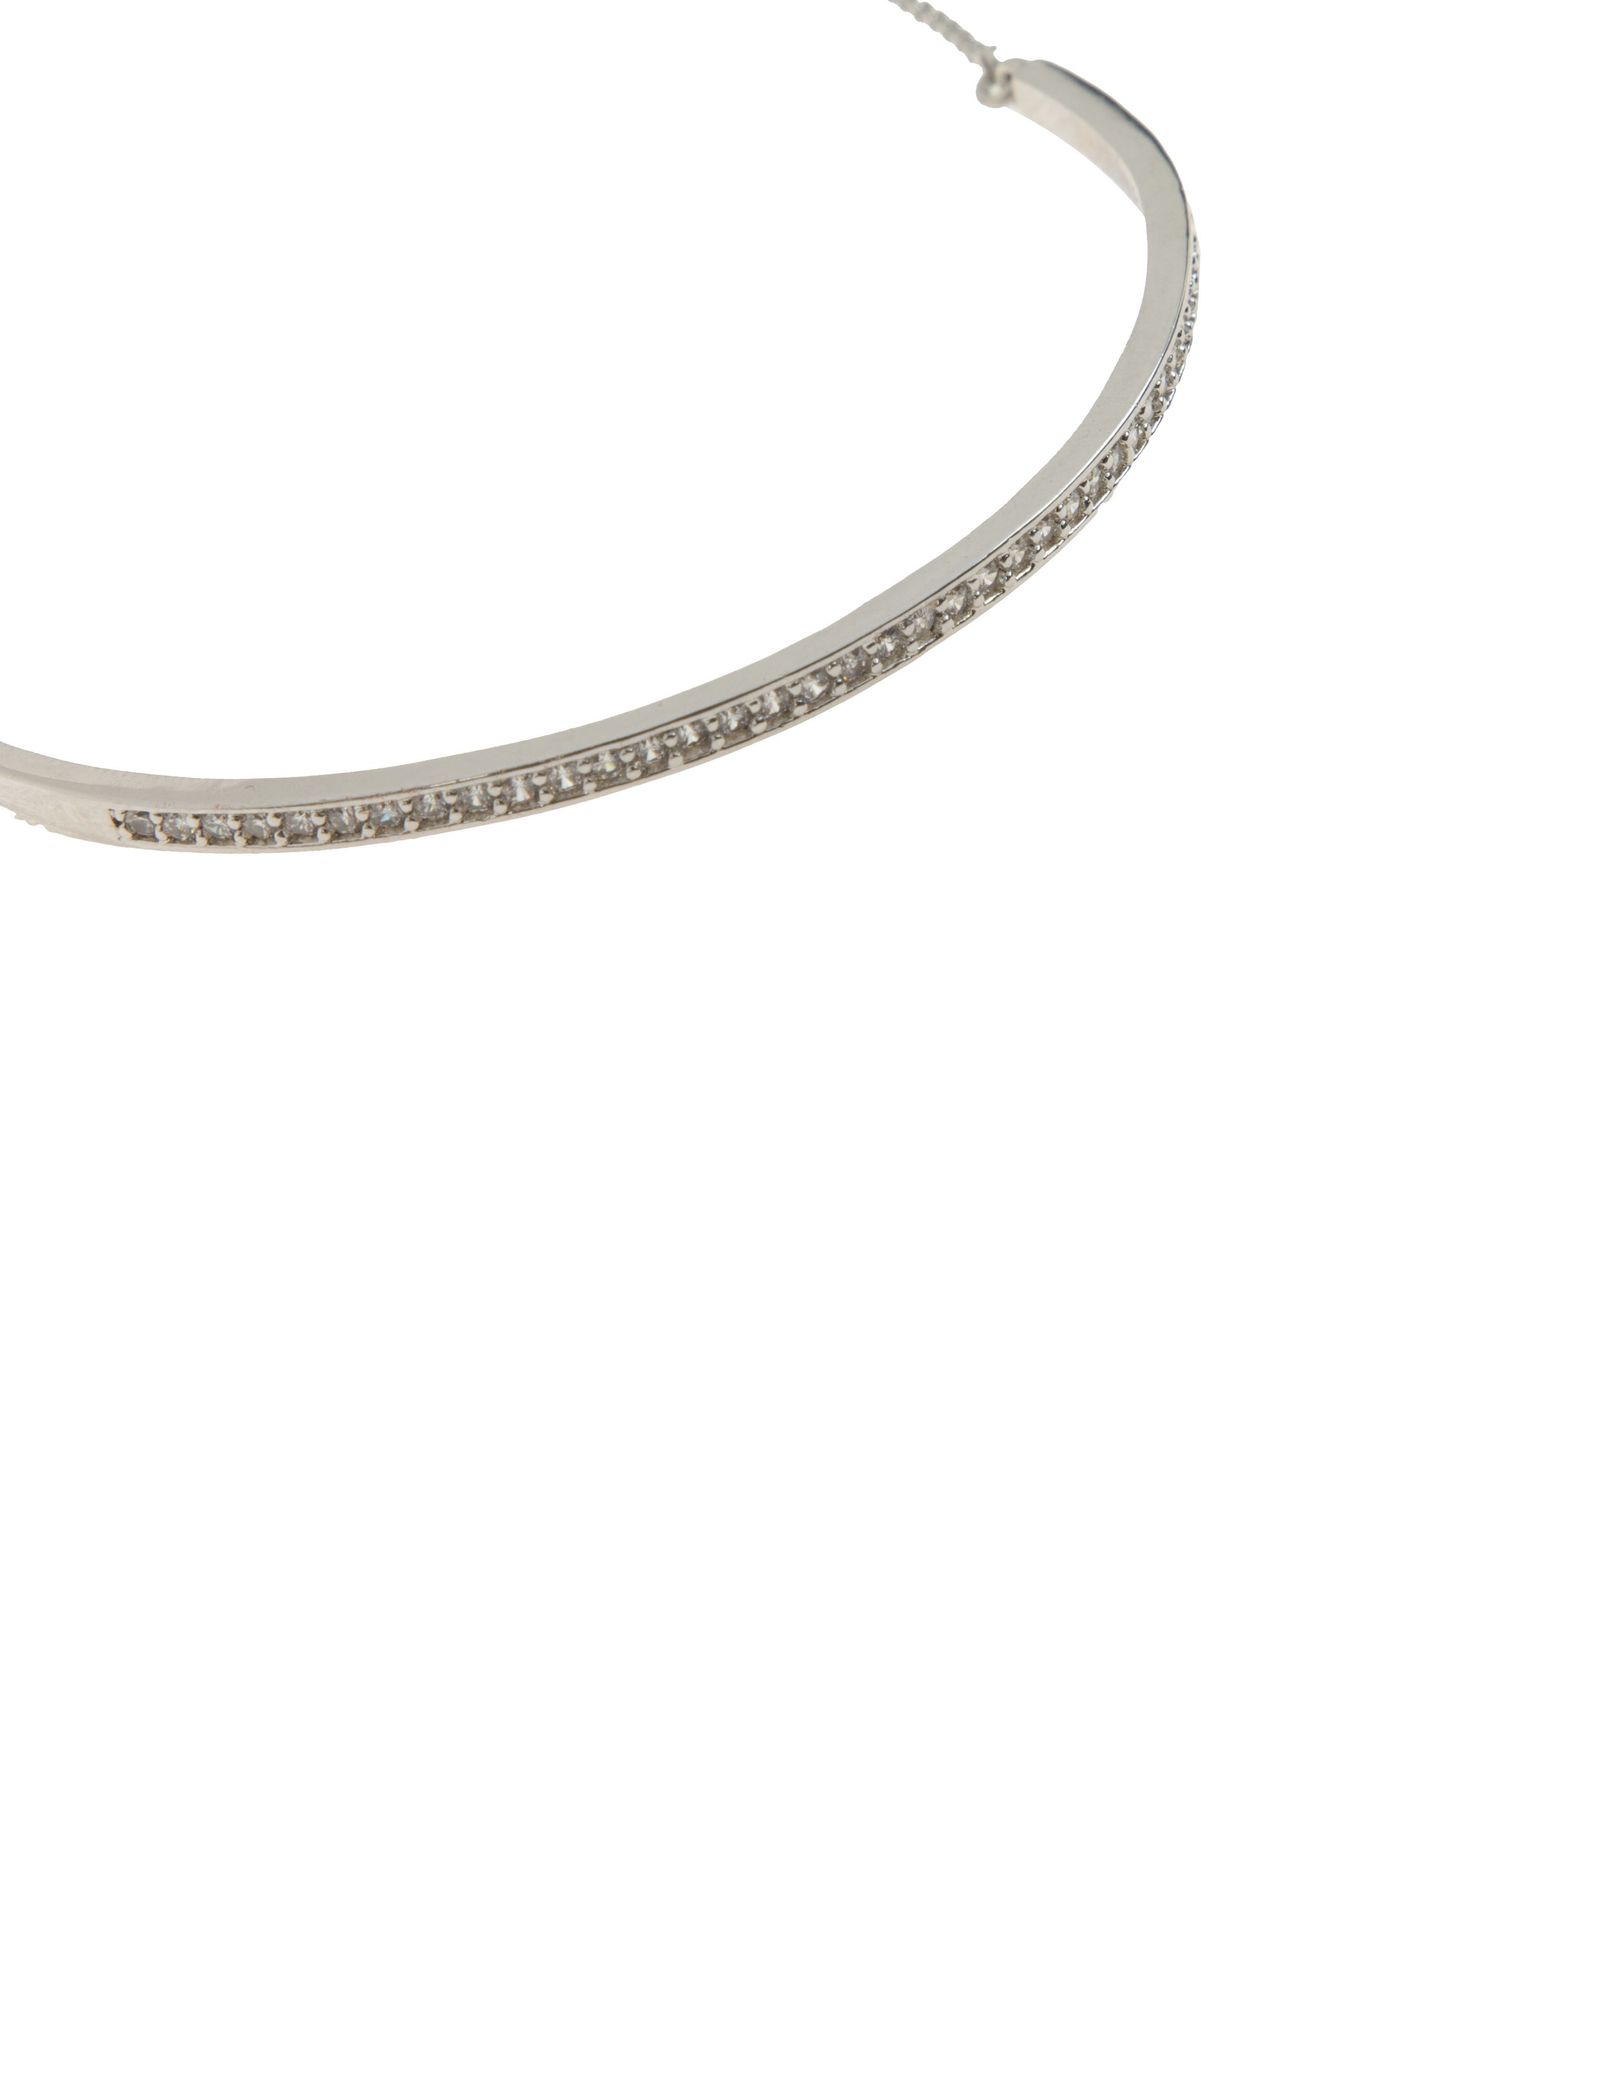 دستبند استیل النگویی زنانه - اکسسورایز تک سایز - نقره اي - 4